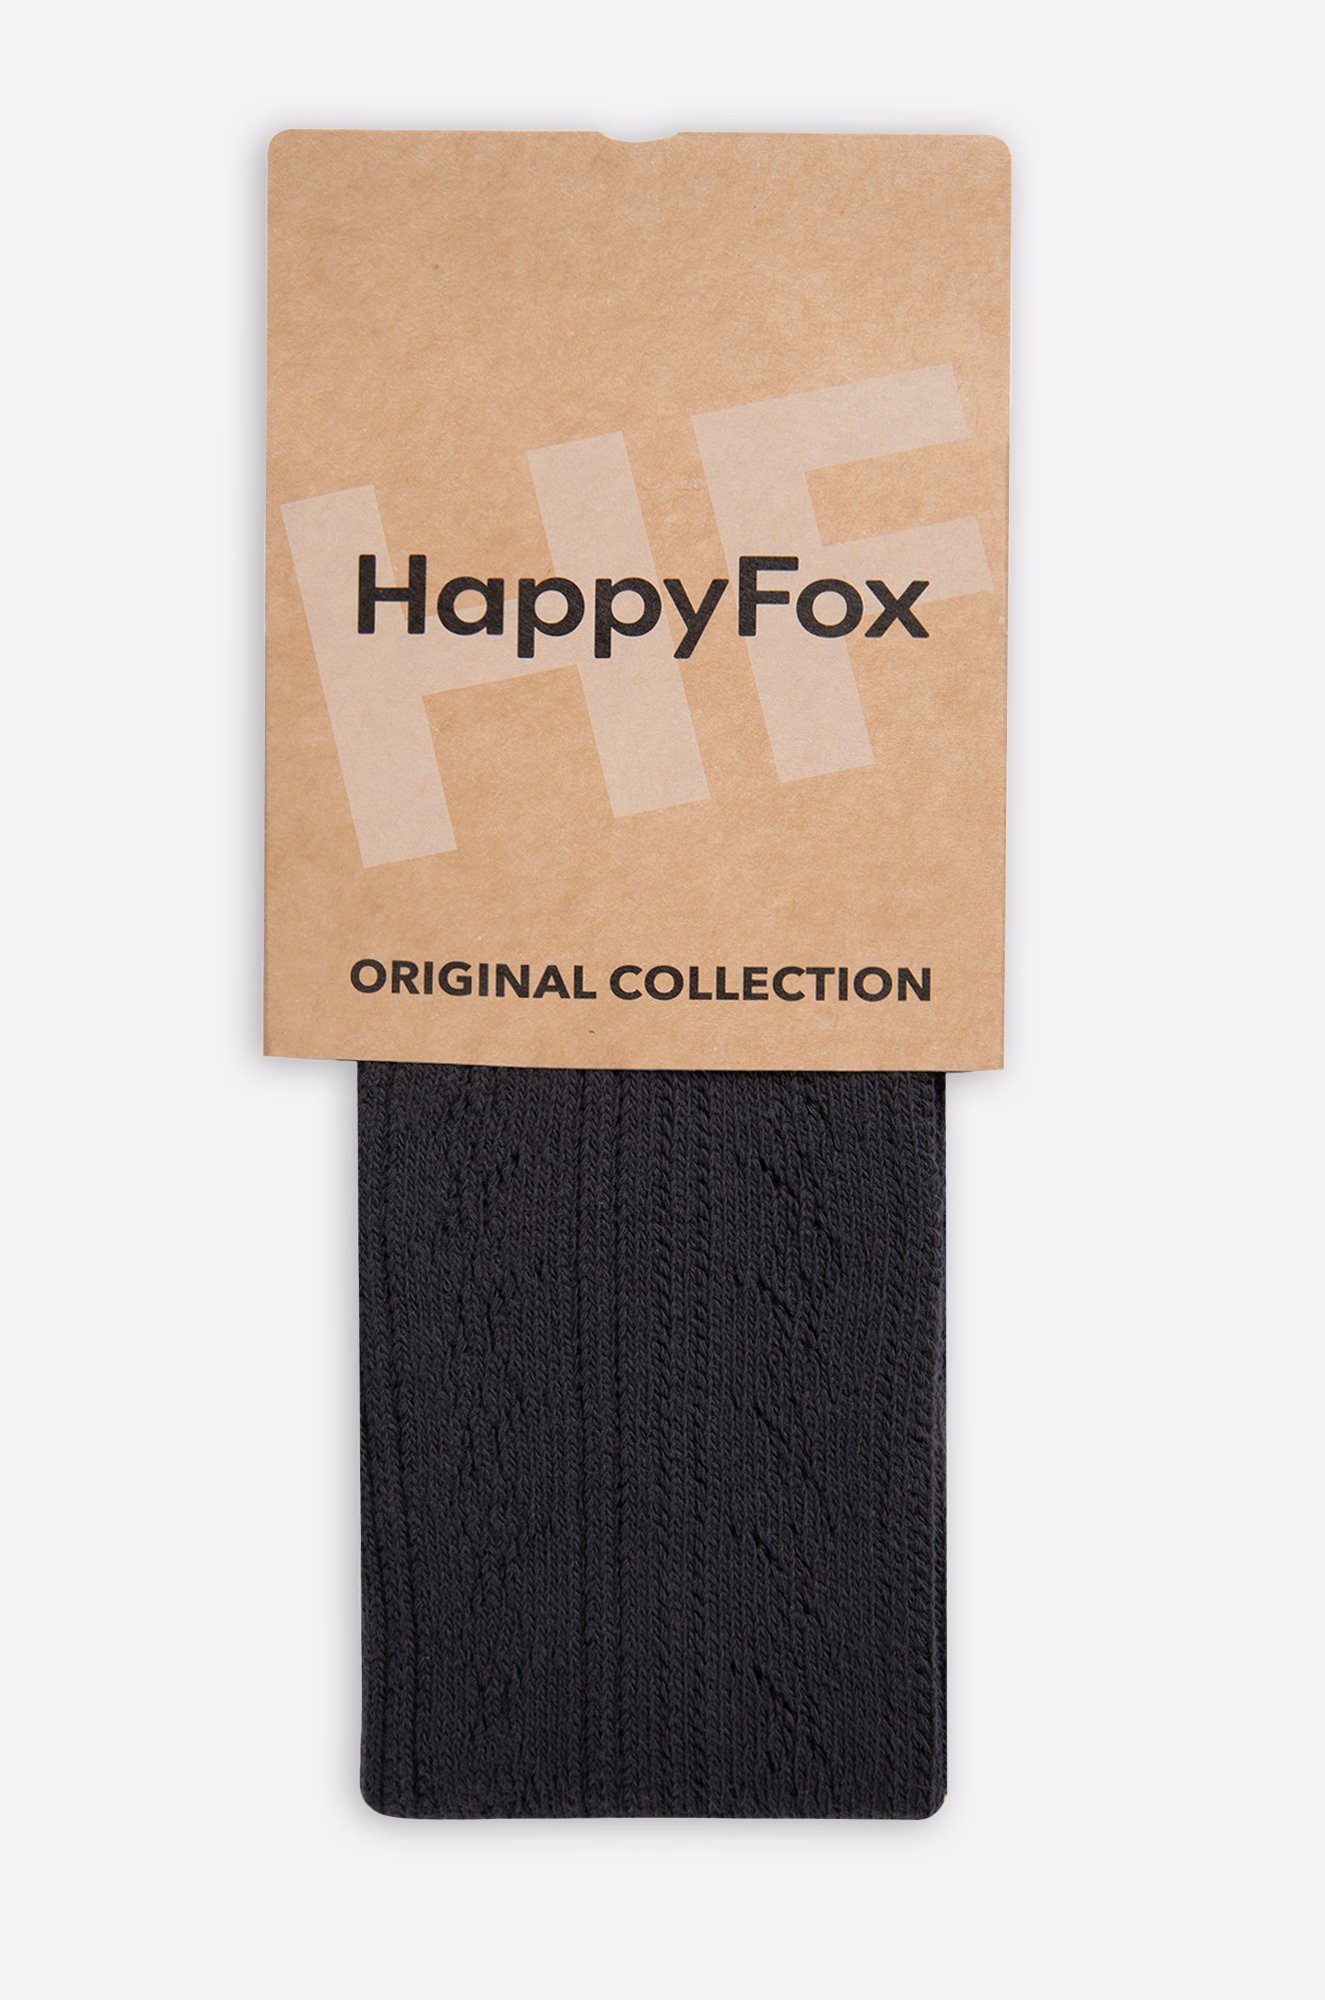 Ажурные колготки для девочки Happy Fox